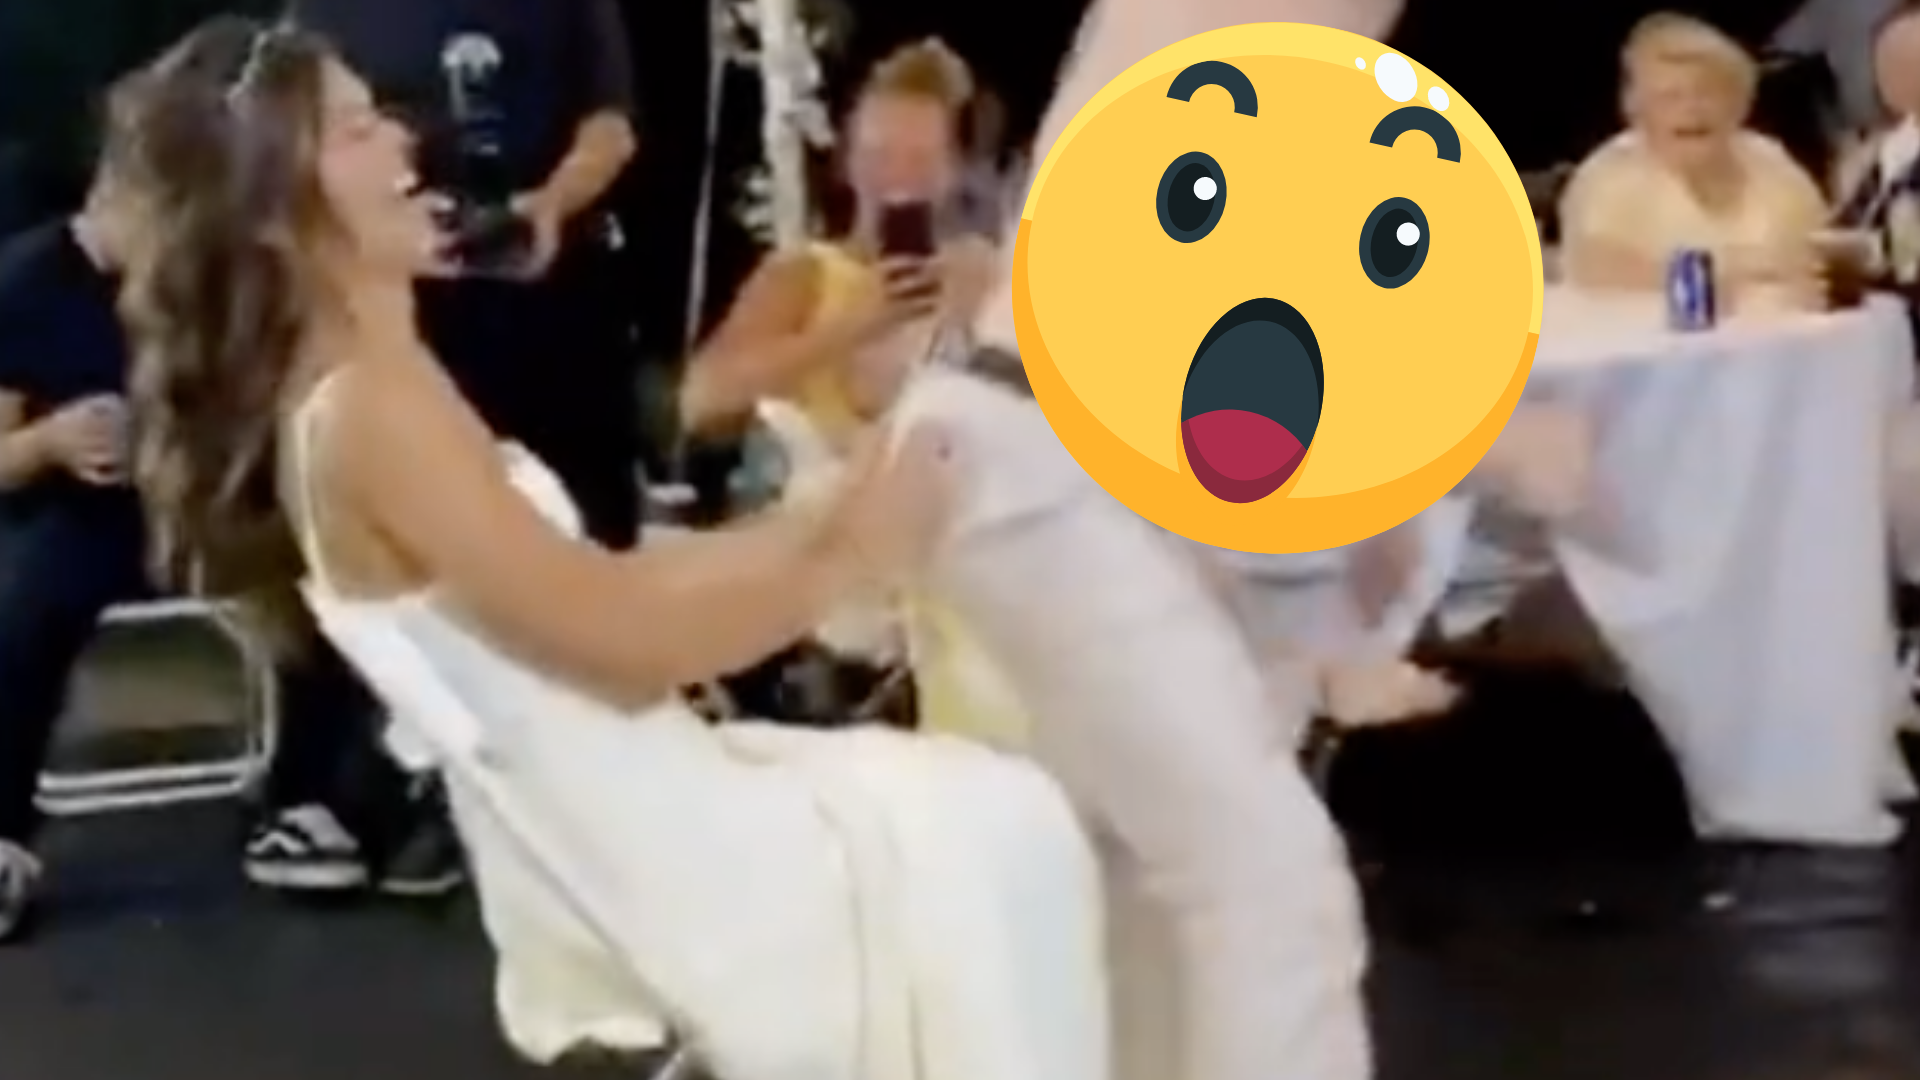 Novio patea por accidente a su novia en plena fiesta de su boda